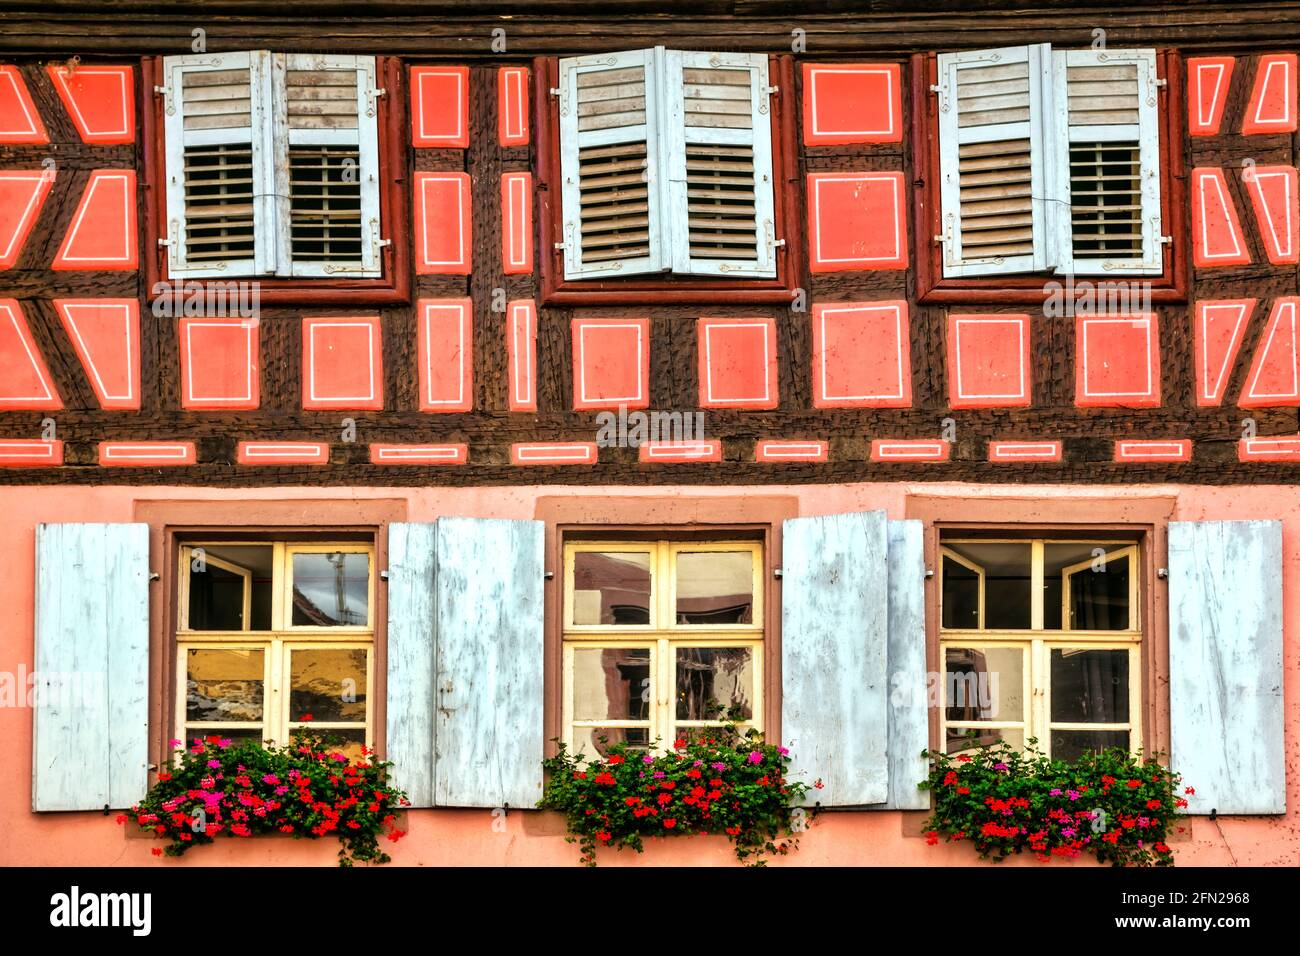 Paysage et architecture français, rues florales colorées de la région Alsace. Villages traditionnels typiques Banque D'Images